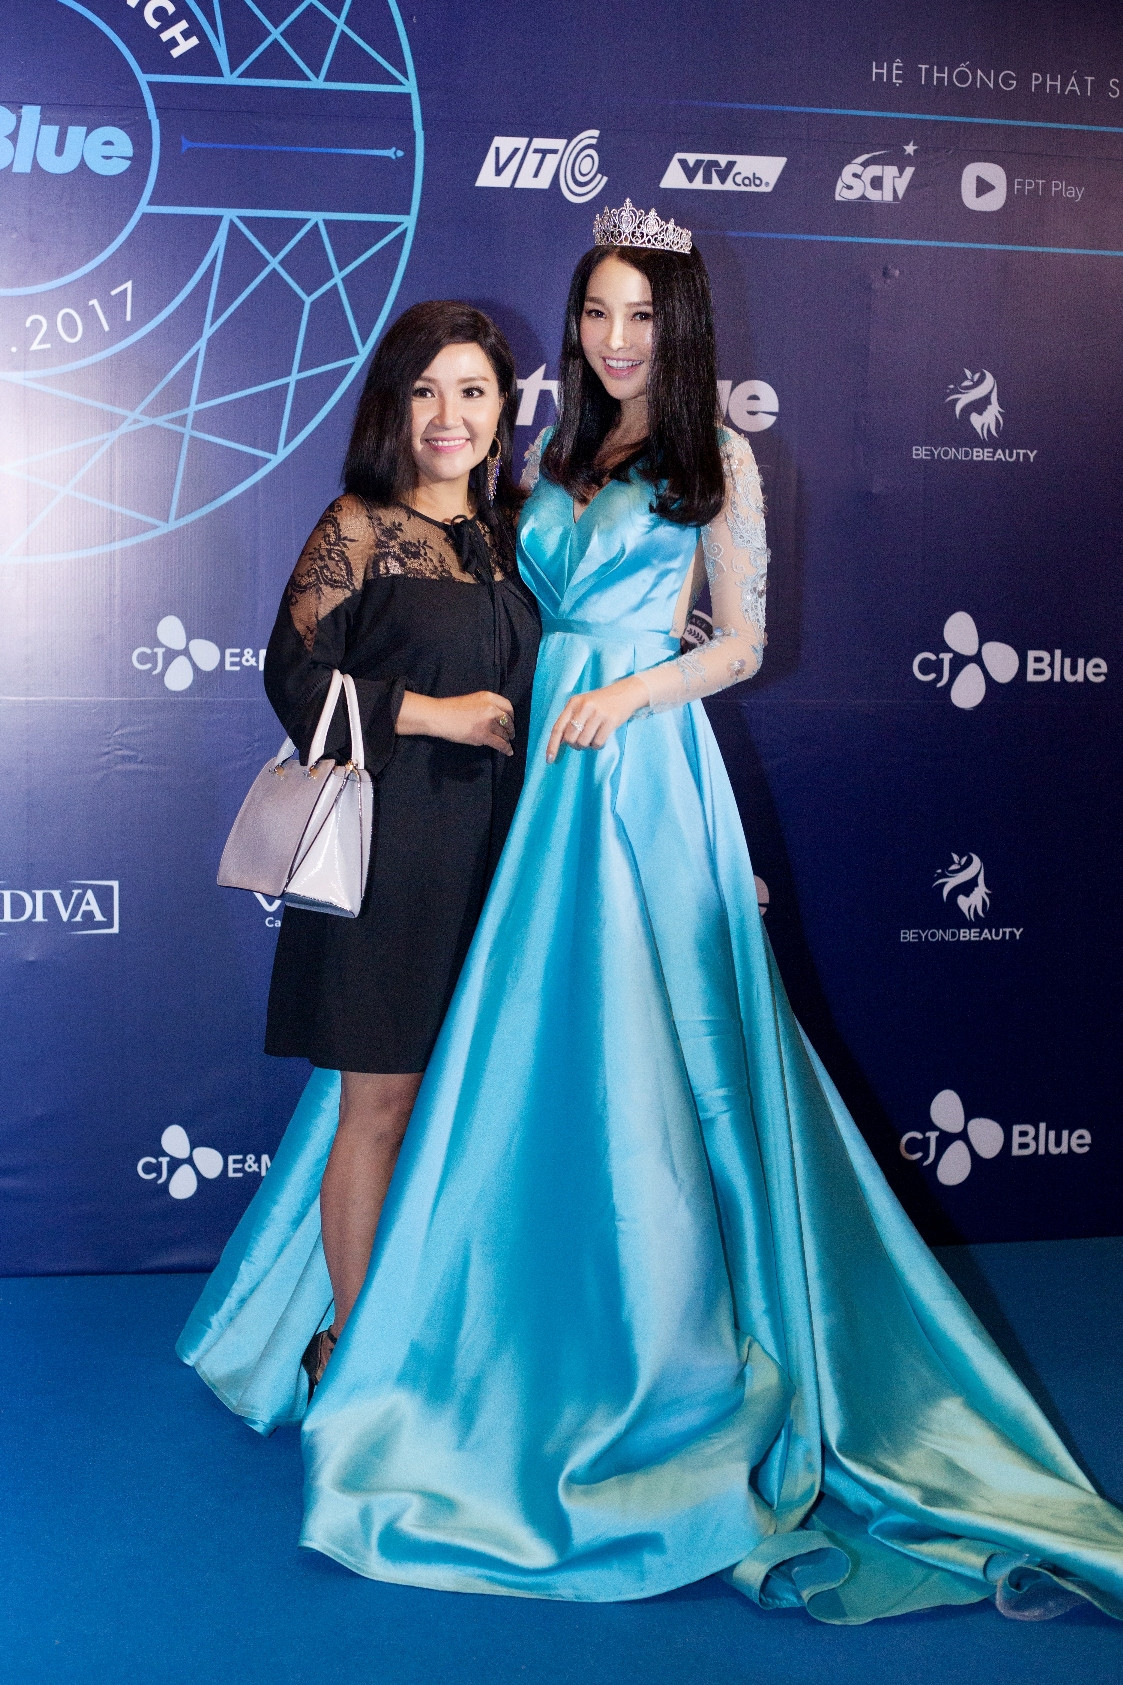 Á hậu Siêu tài năng Thế giới 2017 Lương Thái Trân rạng ngời vẻ đẹp vương hậu trên thảm xanh tvBlue